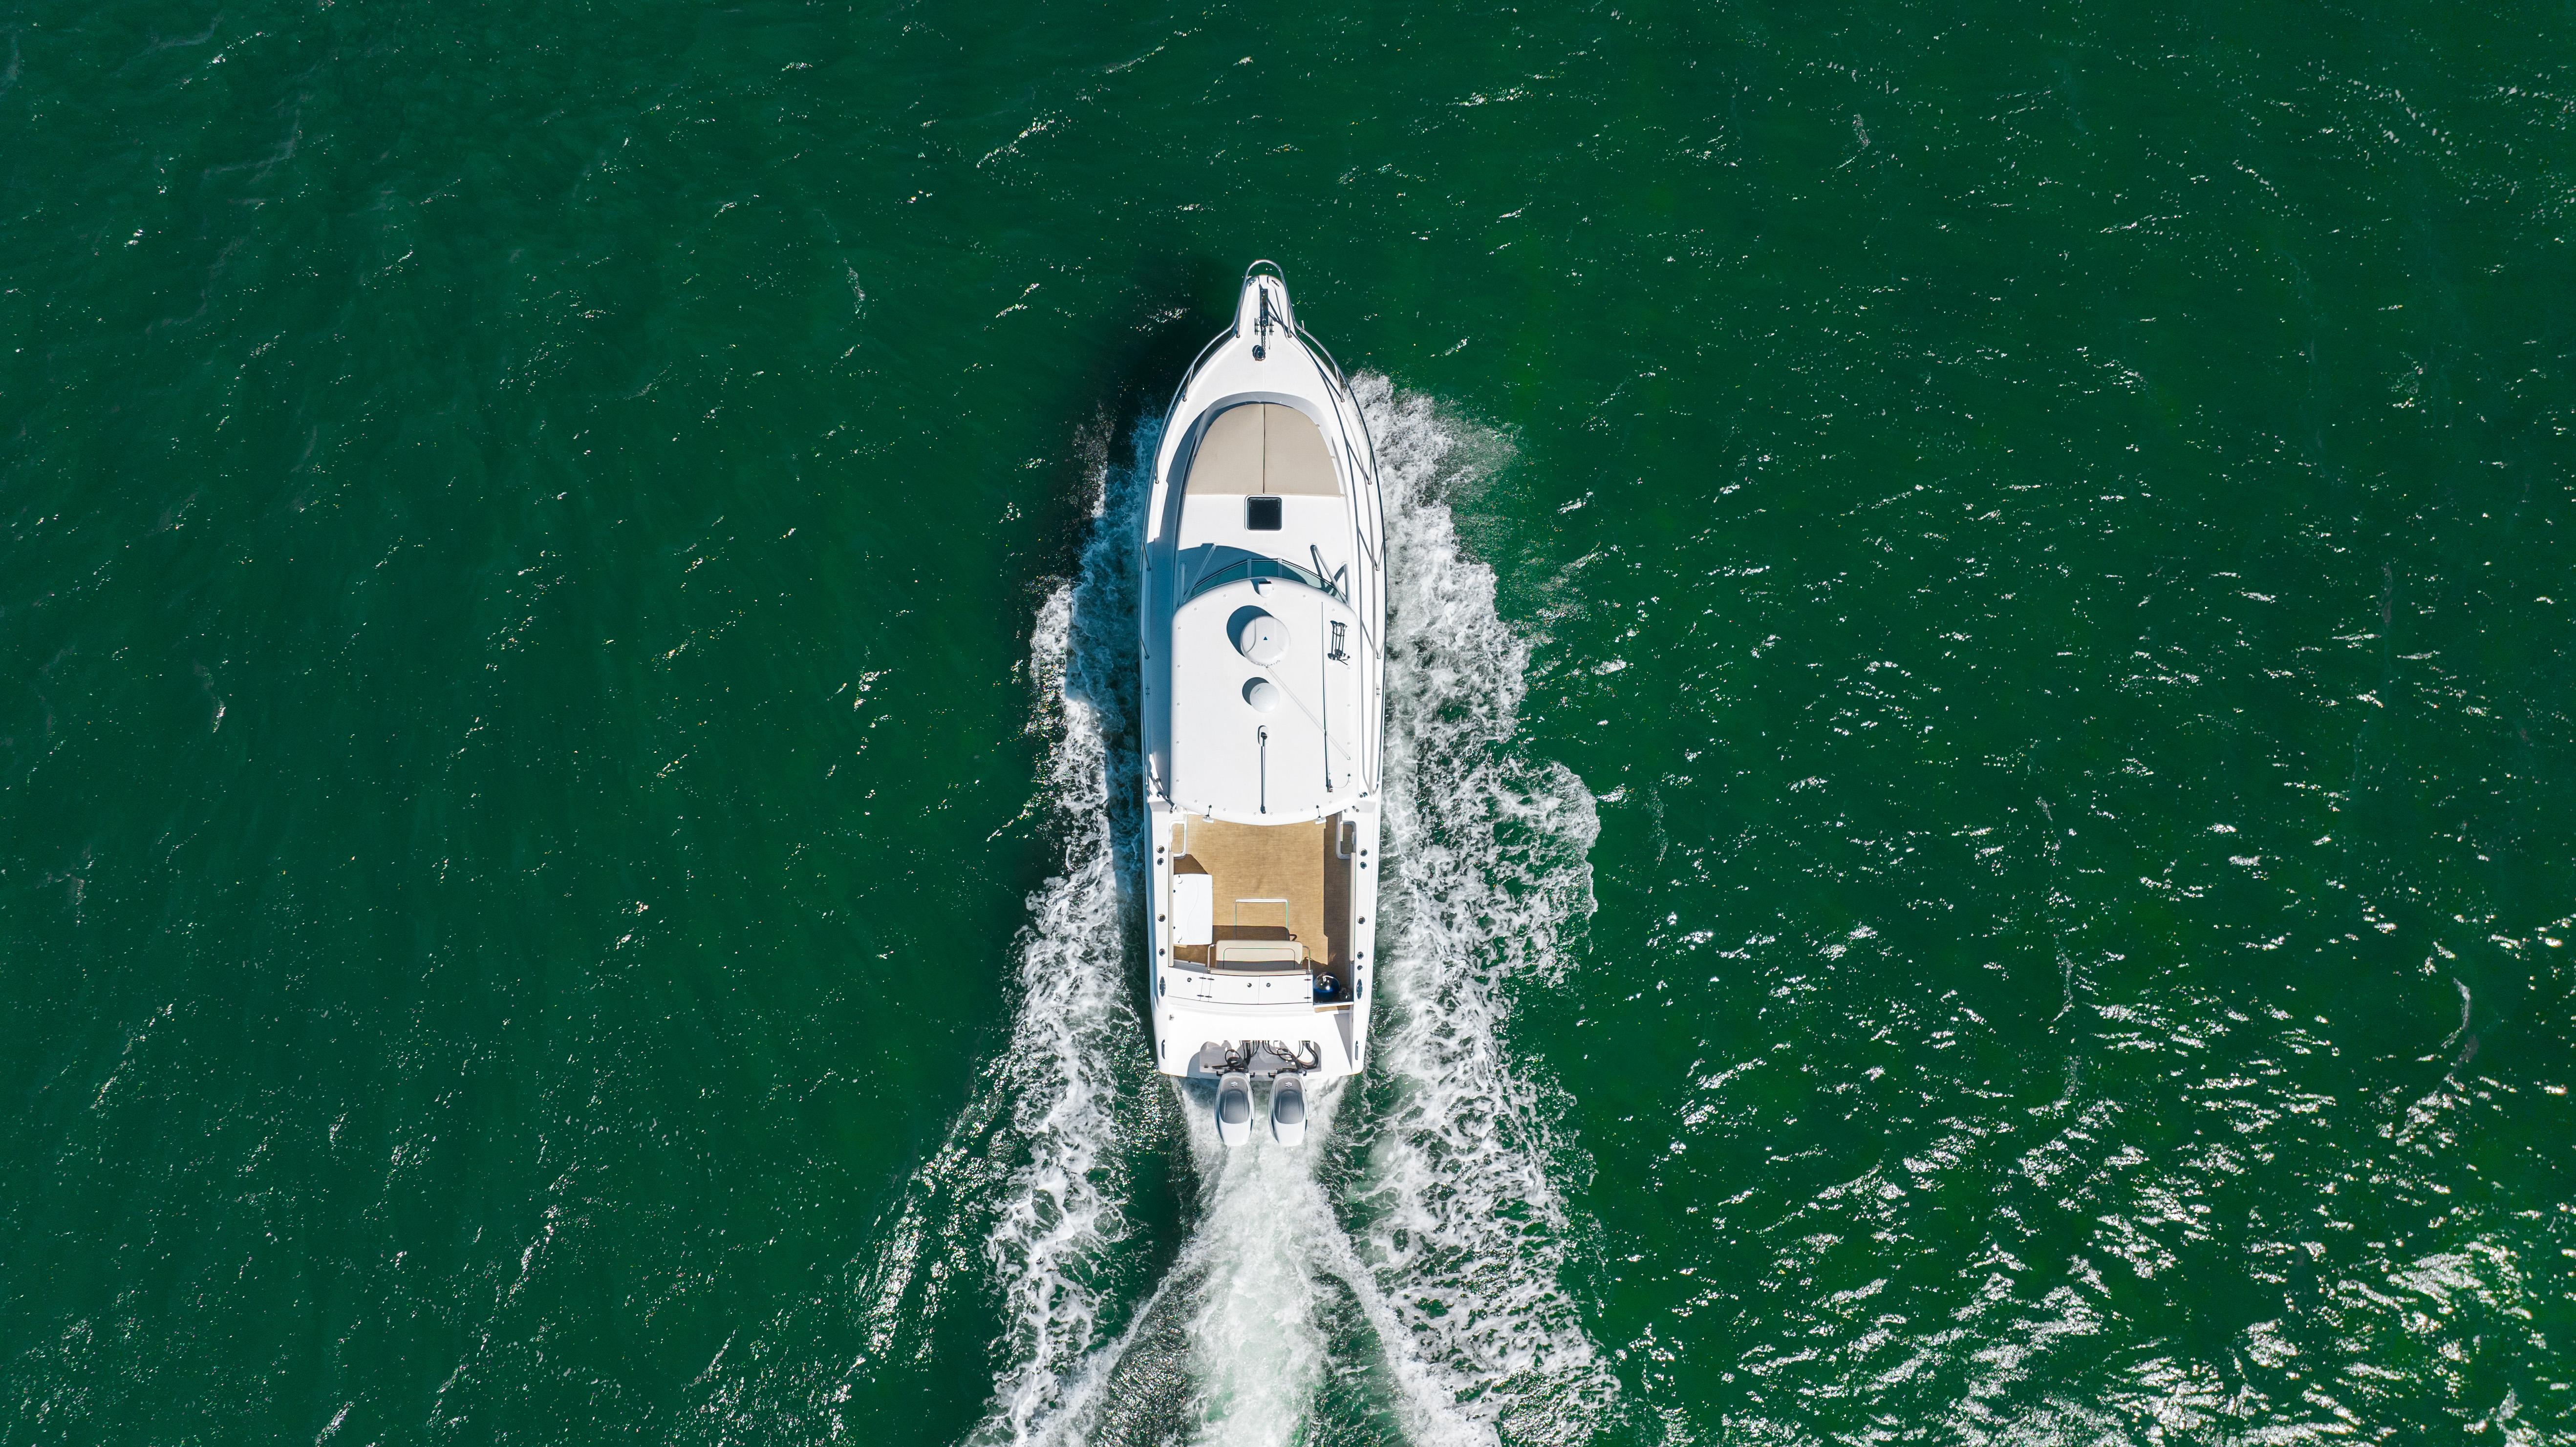 Stamas 37 TIKKUM - Aerial profile photo on water